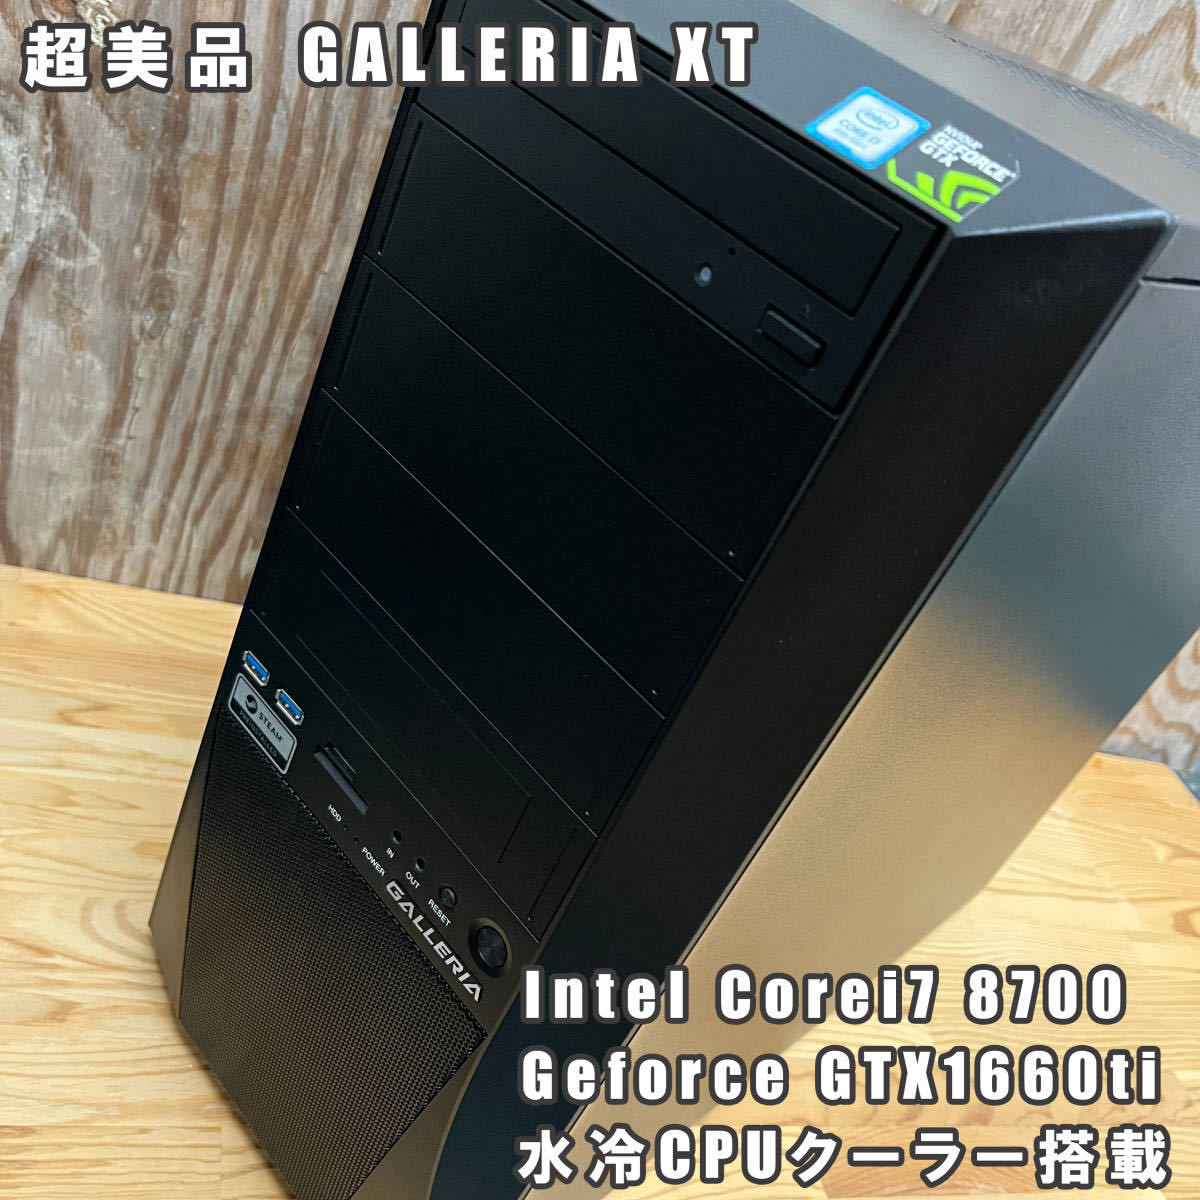 超美品 GALLERIA XT 水冷CPUクーラー搭載 Corei7 8700 Geforce GTX1660ti stormx 6GB  SSD計500GB HDD計2TB ゲーミングPC デスクトップ